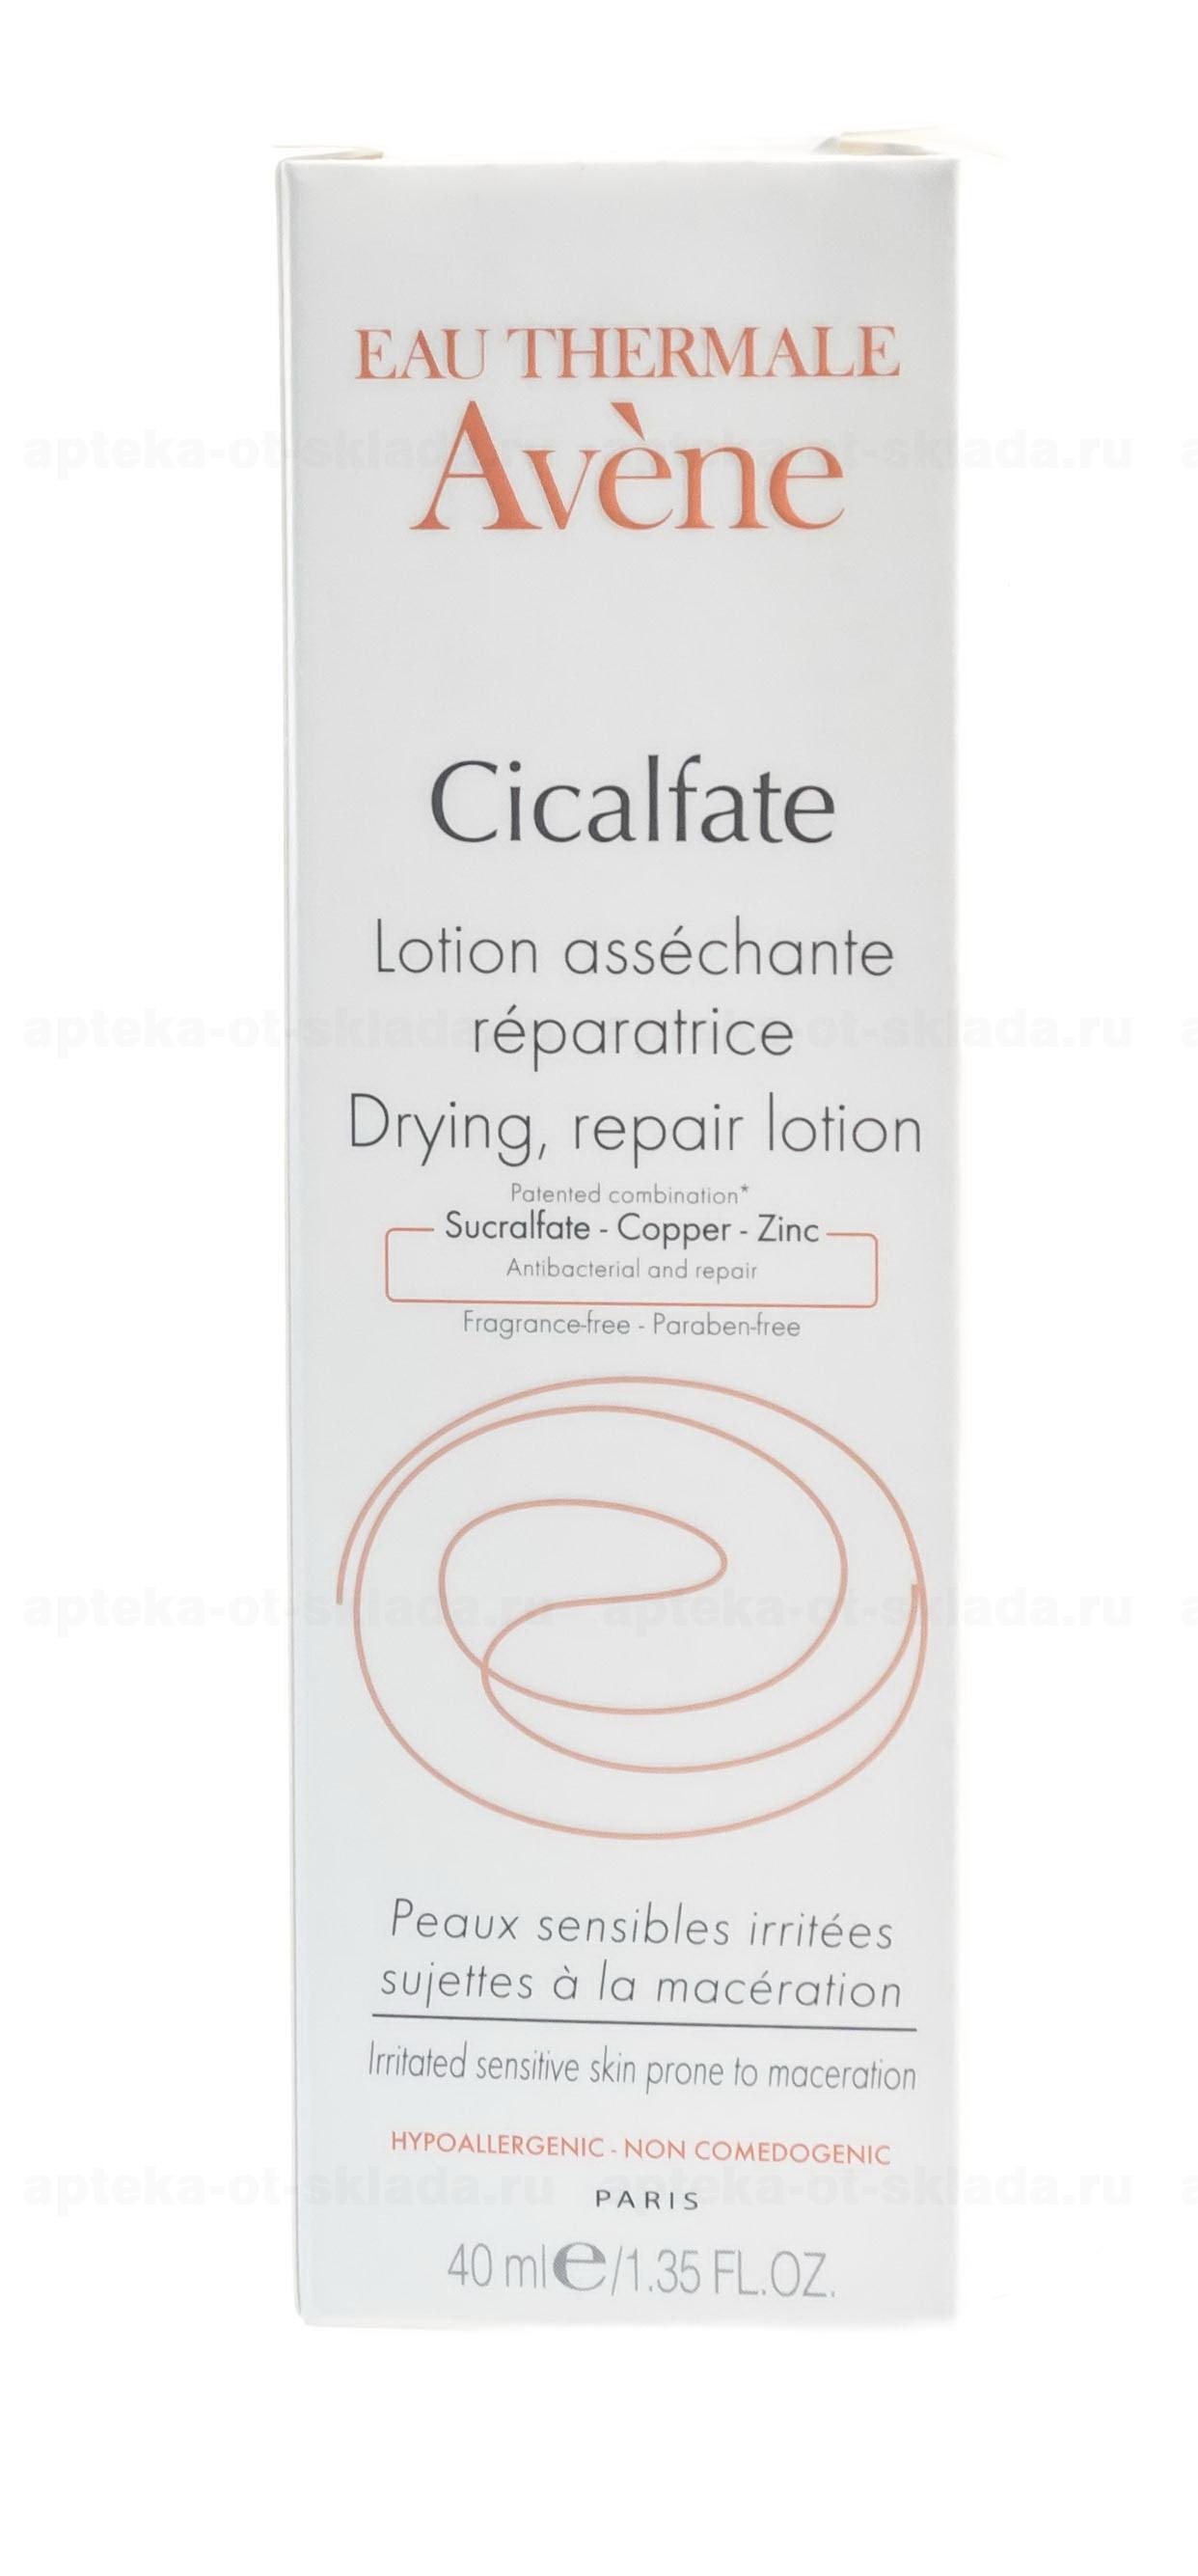 Avene Cicalfate лосьон восстанавливающий целостность кожи для чувствительной кожи 40 мл